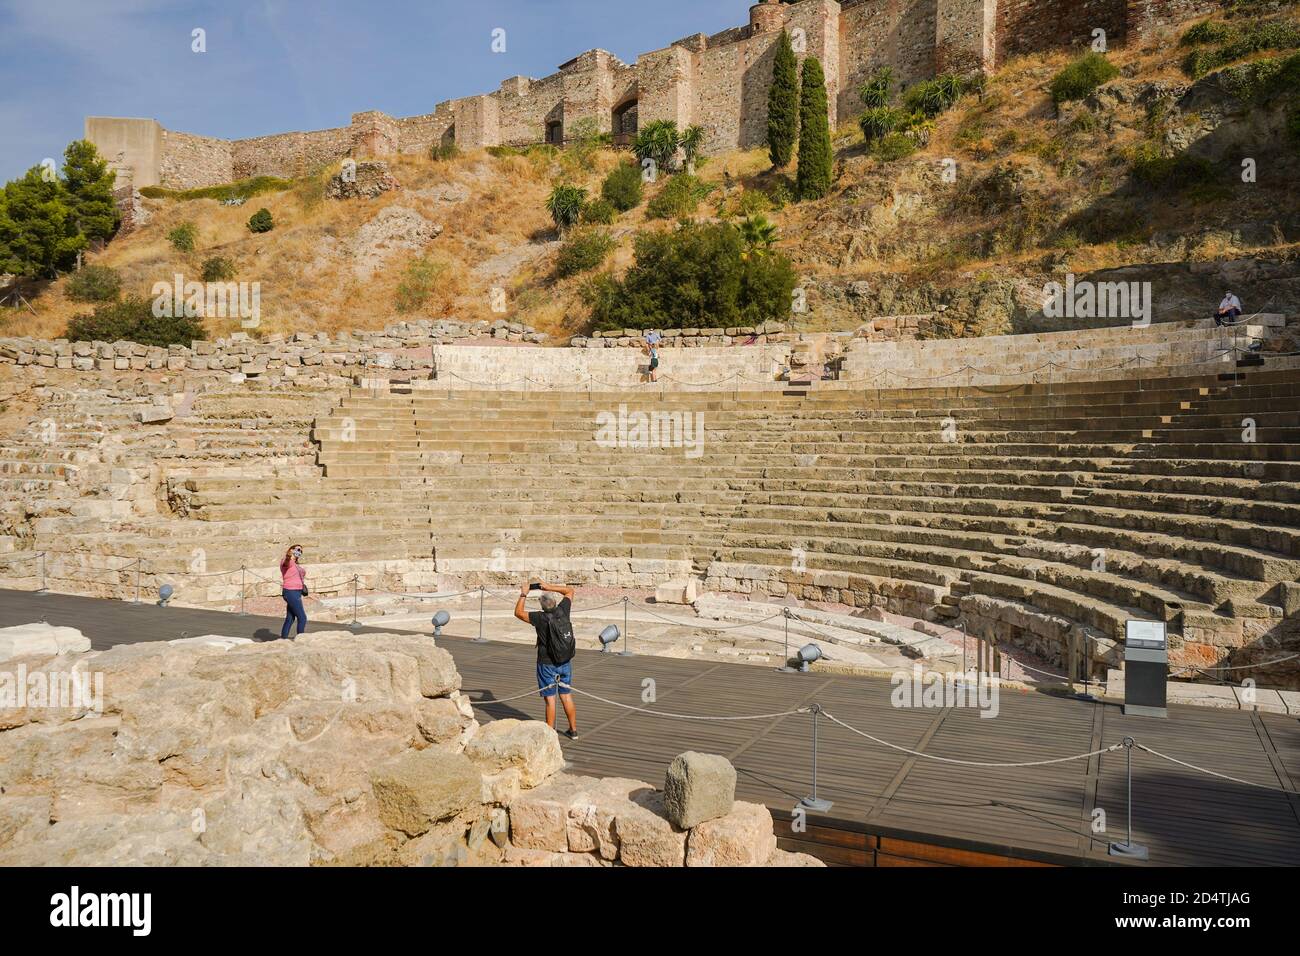 Malaga Spain. Malaga Alcazaba. Ancient Roman amphitheater with Alcazaba behind, Malaga, Andalusia, Spain Stock Photo